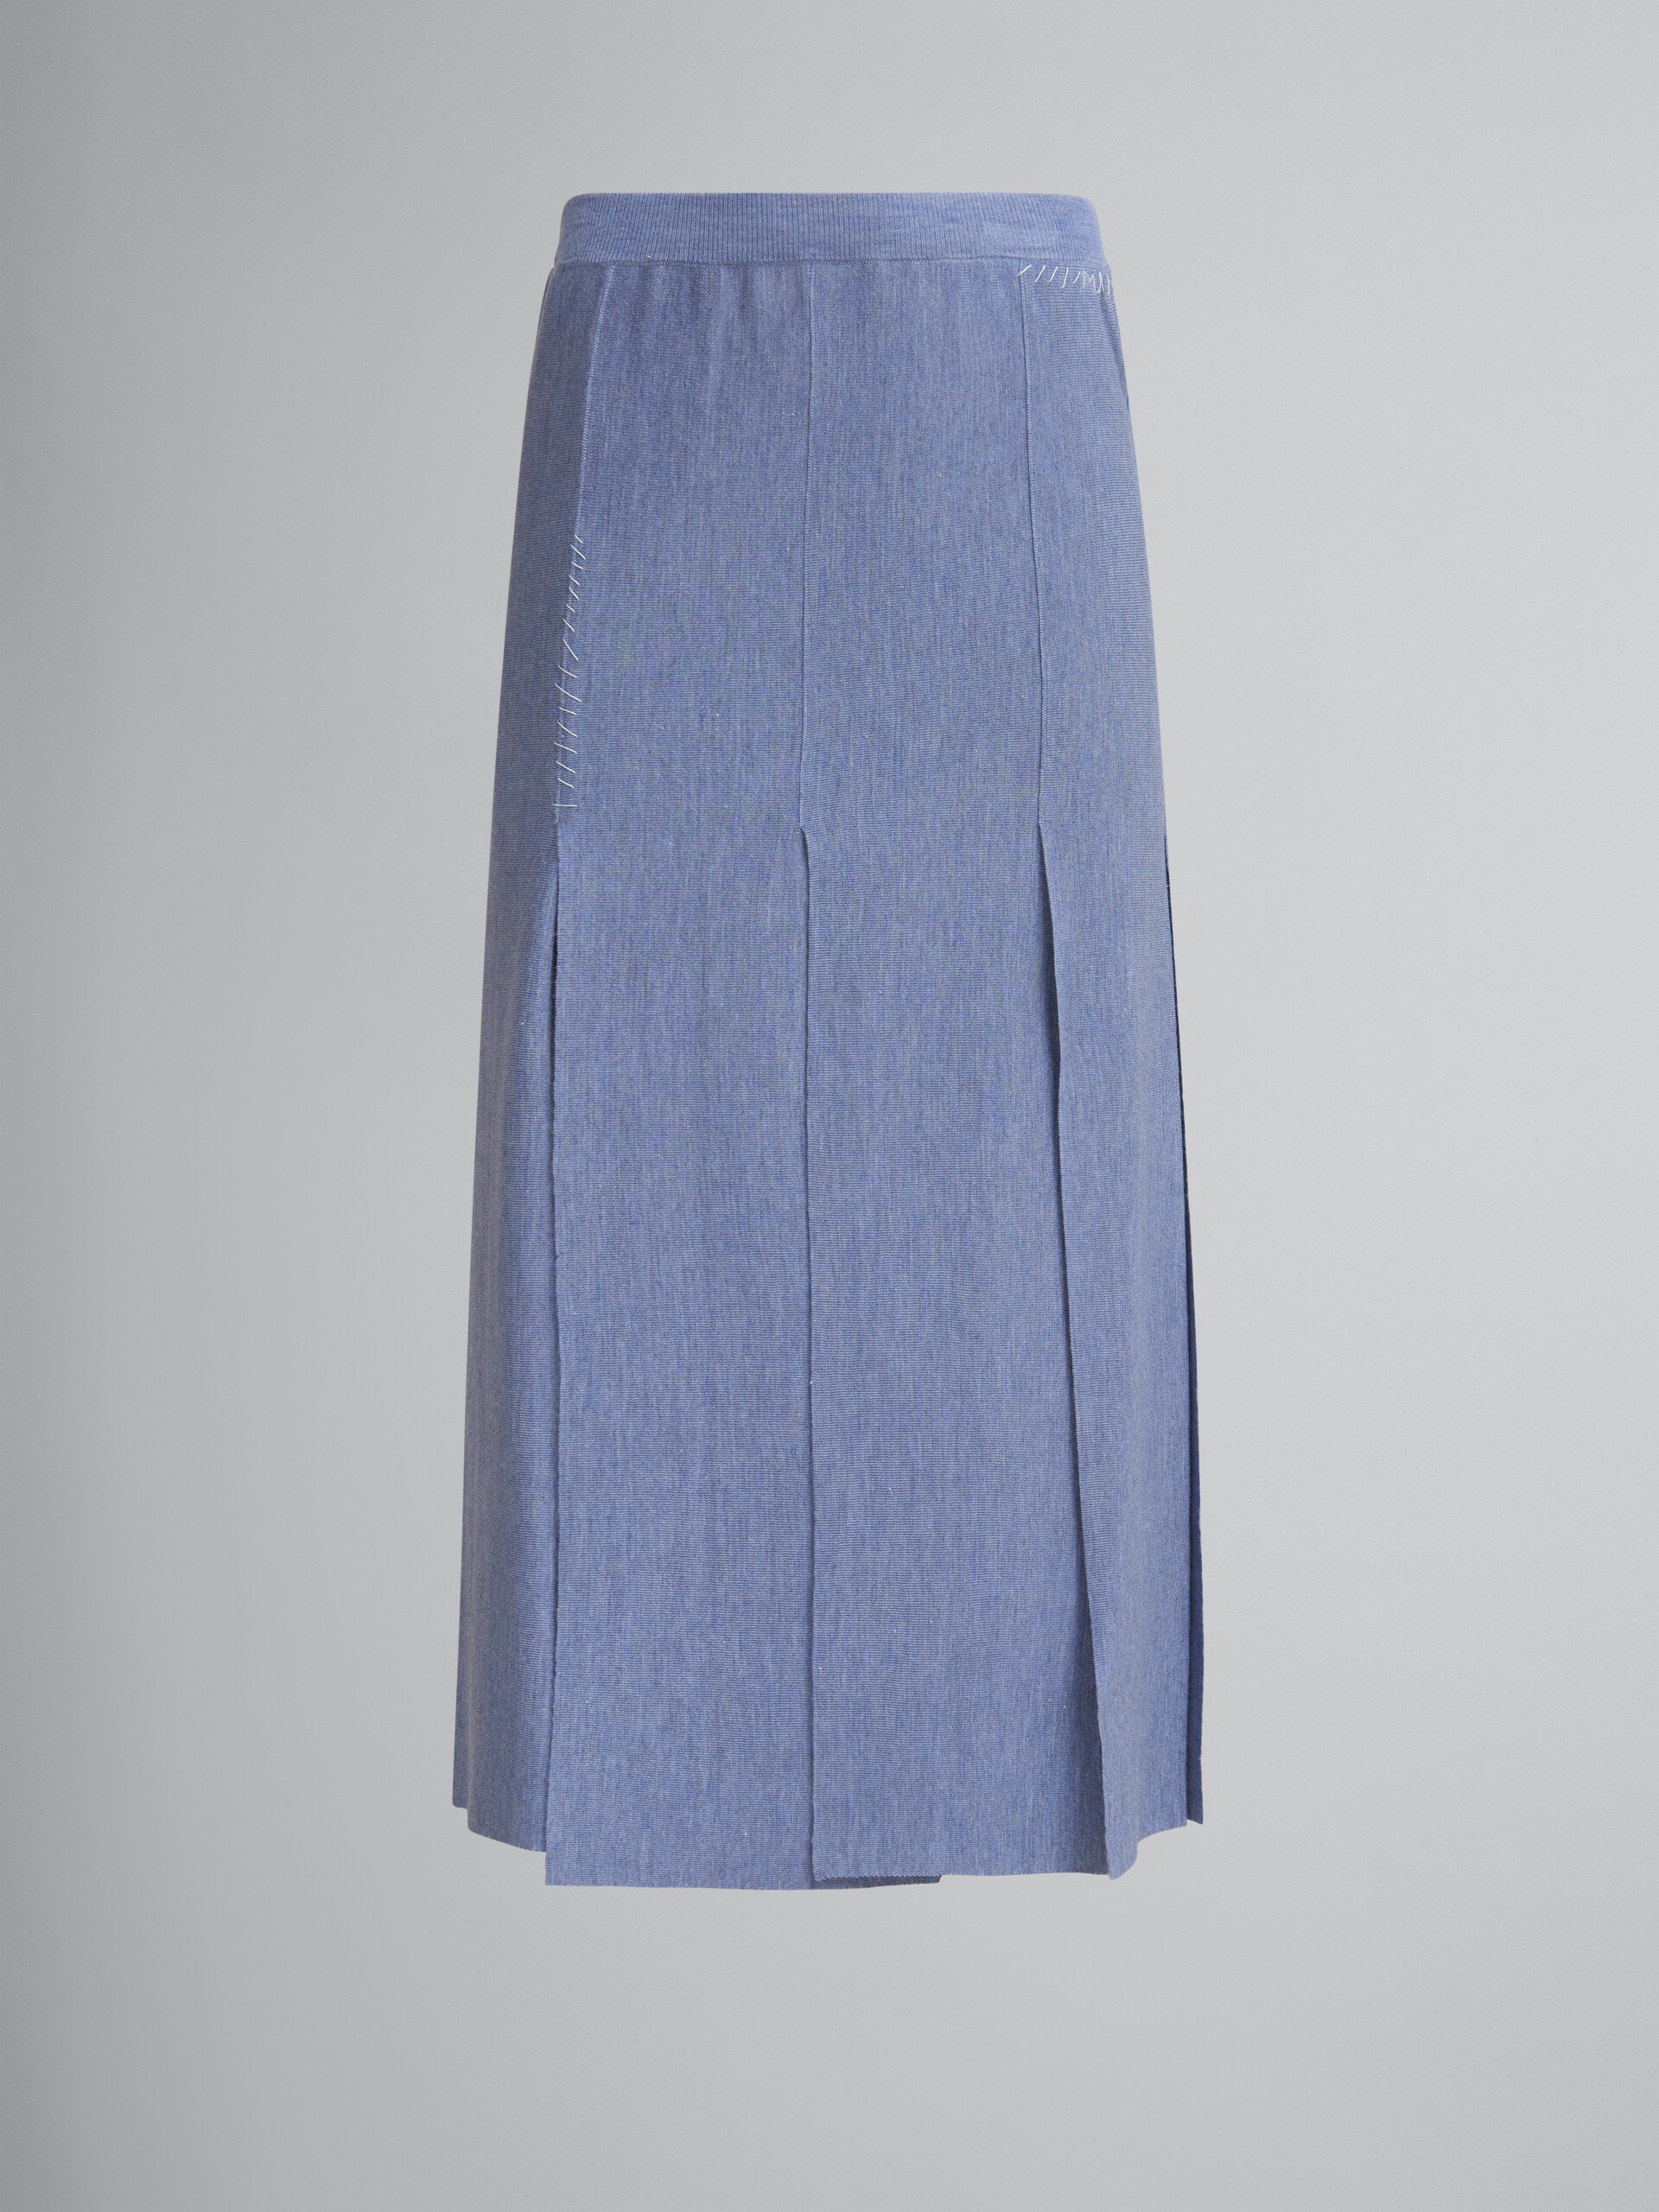 Falda azul de lana y seda con aberturas sin rematar - Faldas - Image 1